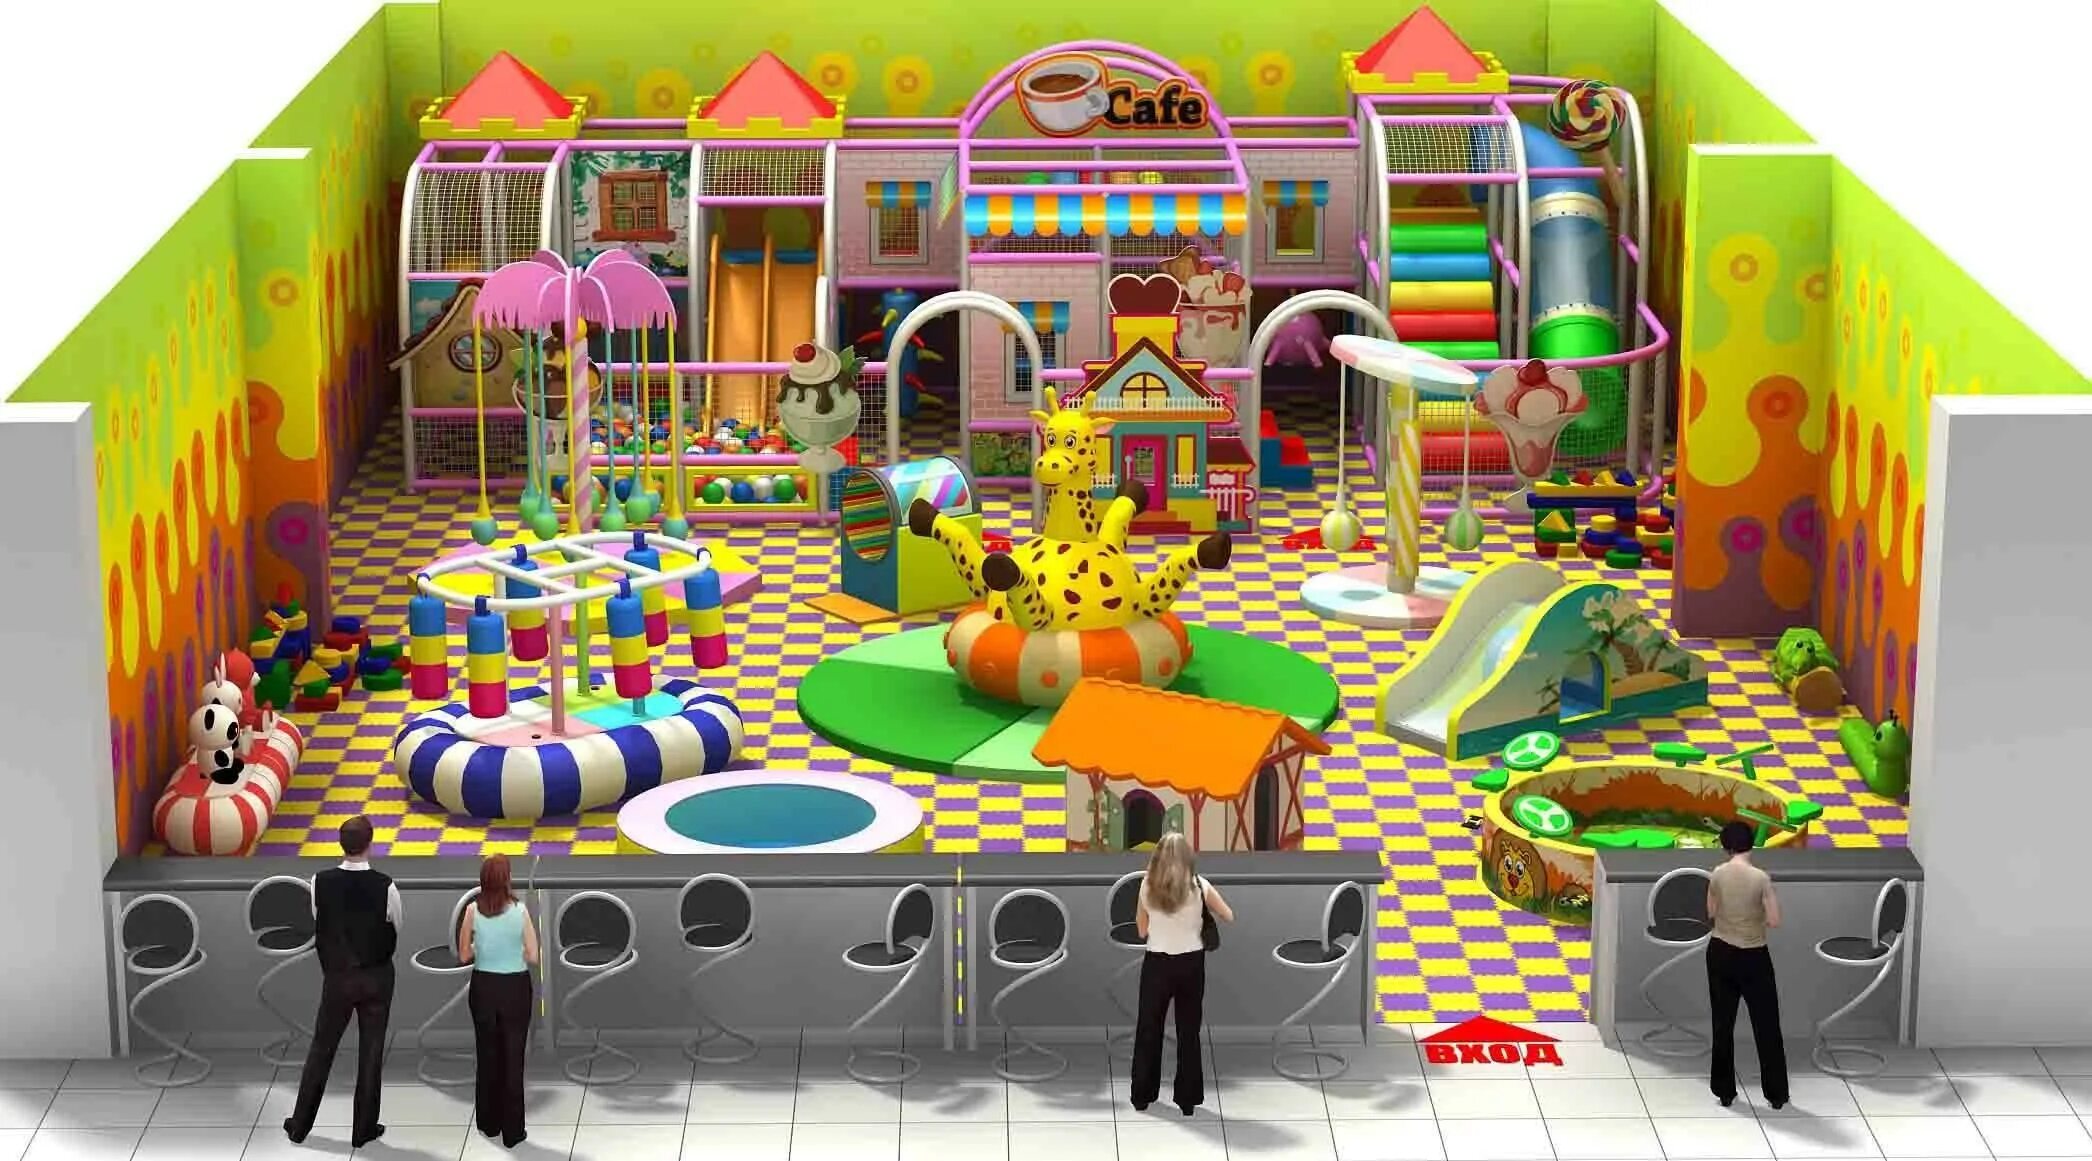 Развлекательный центр "детская игровой центр сказка" Динская. Детская игровая комната. Детские игровые лабиринты. Игровая комната для детей.